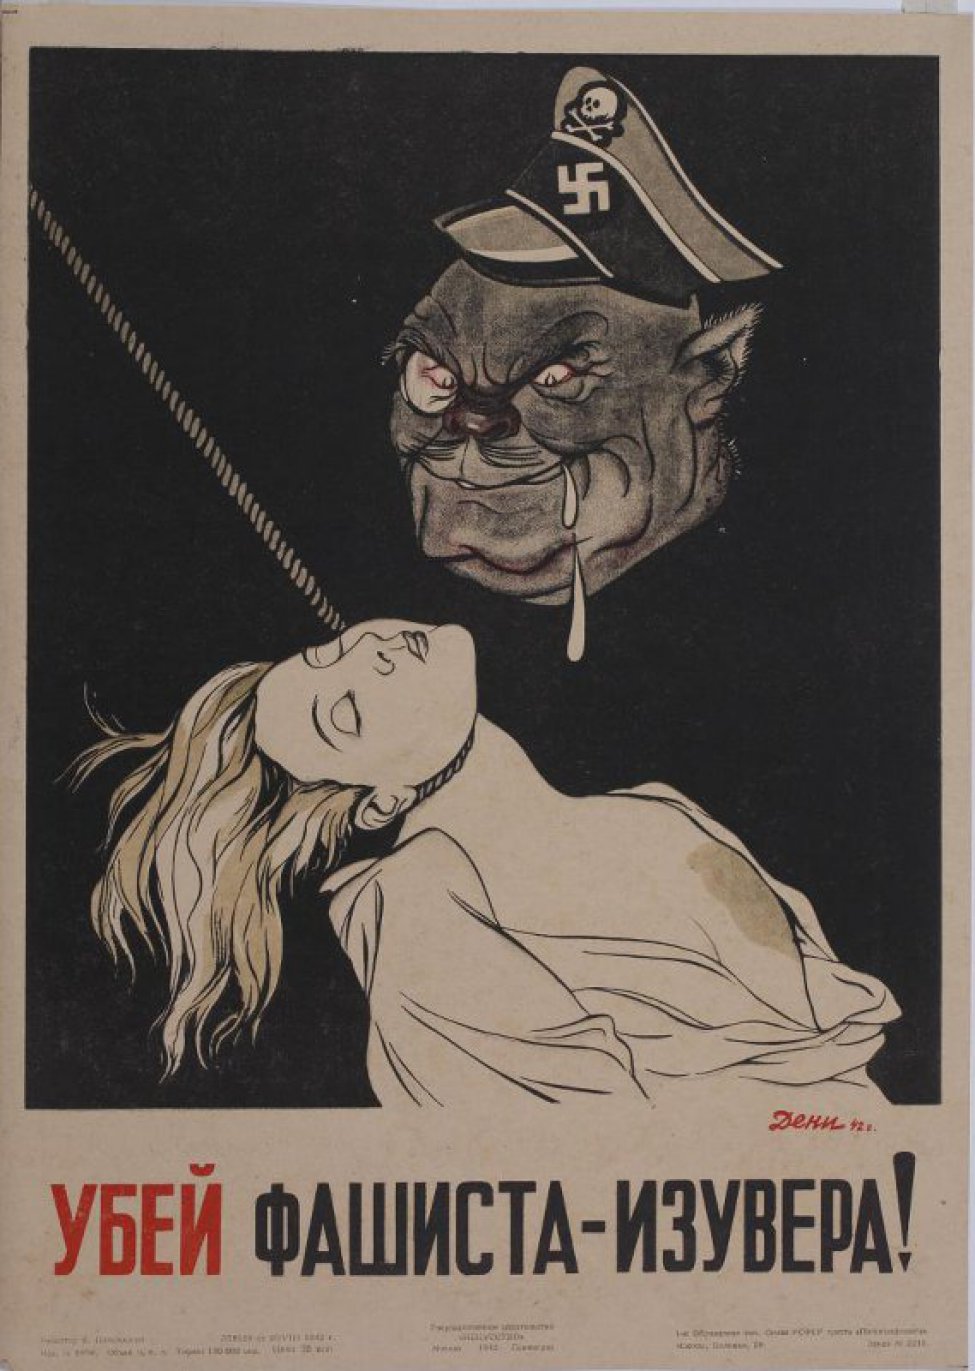 На чёрном фоне изображена голова фашиста со свастикой и черепом на шапке. С пеной у рта он смотрит на свою жертву - висящую на верёвке полуобнажённую задушенную девушку. Внизу призыв.